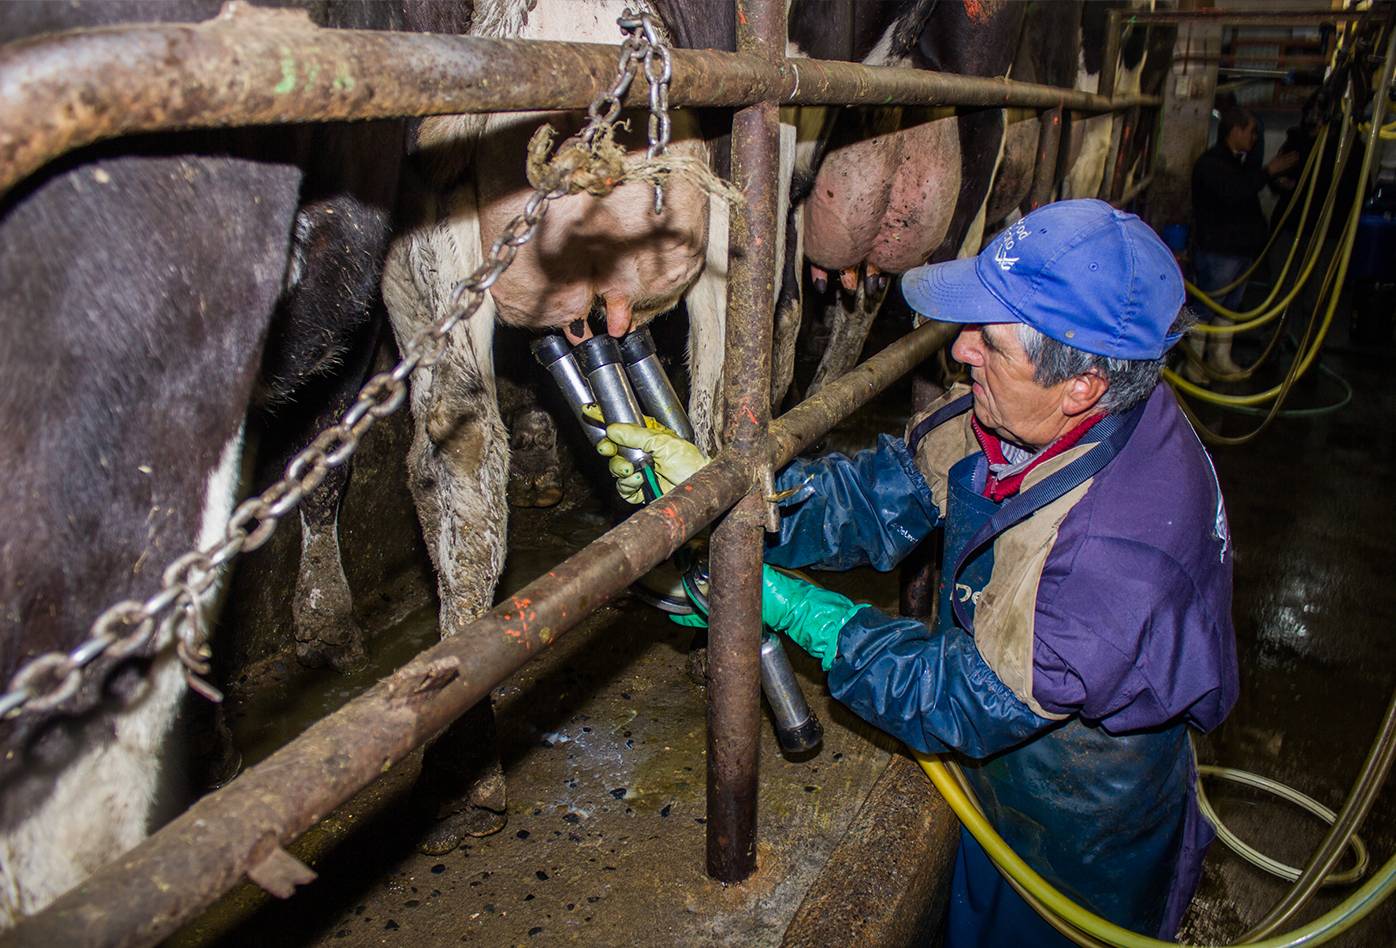 Un trabajador conecta una pezonera a las ubres de una vaca para ordeñarla en una lechería en Chile